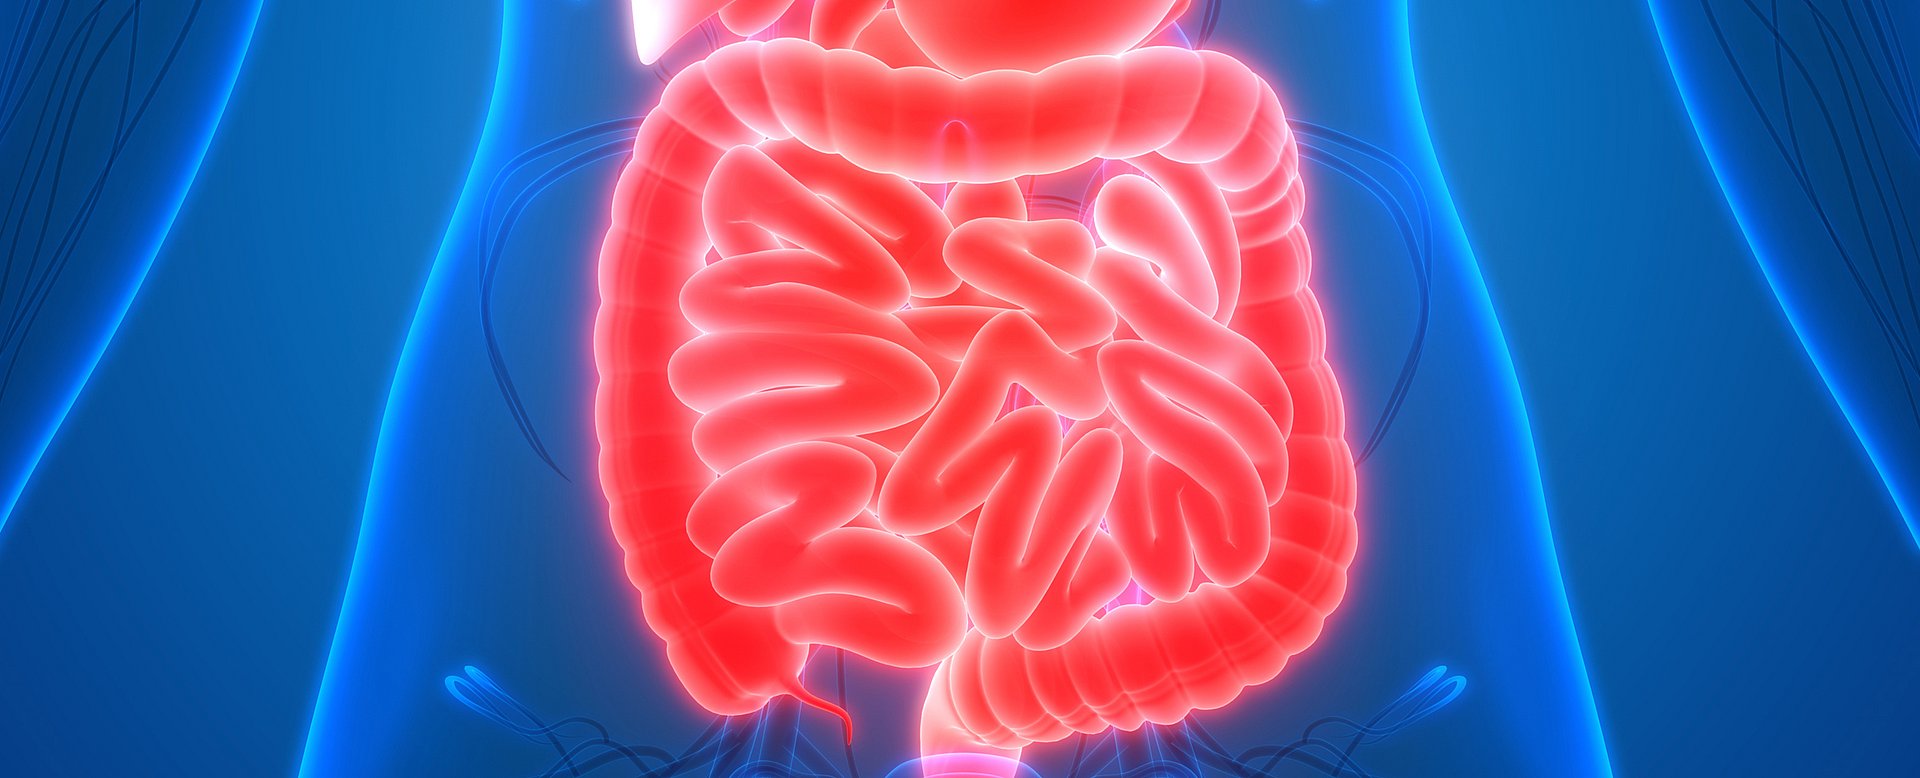 Das Darmhormon Sekretin hat eine neu entdeckte, zusätzliche Funktion: Es aktiviert das Energie verbrauchende Braune Fettgewebe – der Darm spricht sozusagen mit dem Gehirn und meldet darüber, dass Sättigung eingesetzt hat. (Foto: iStock/ magicmine)